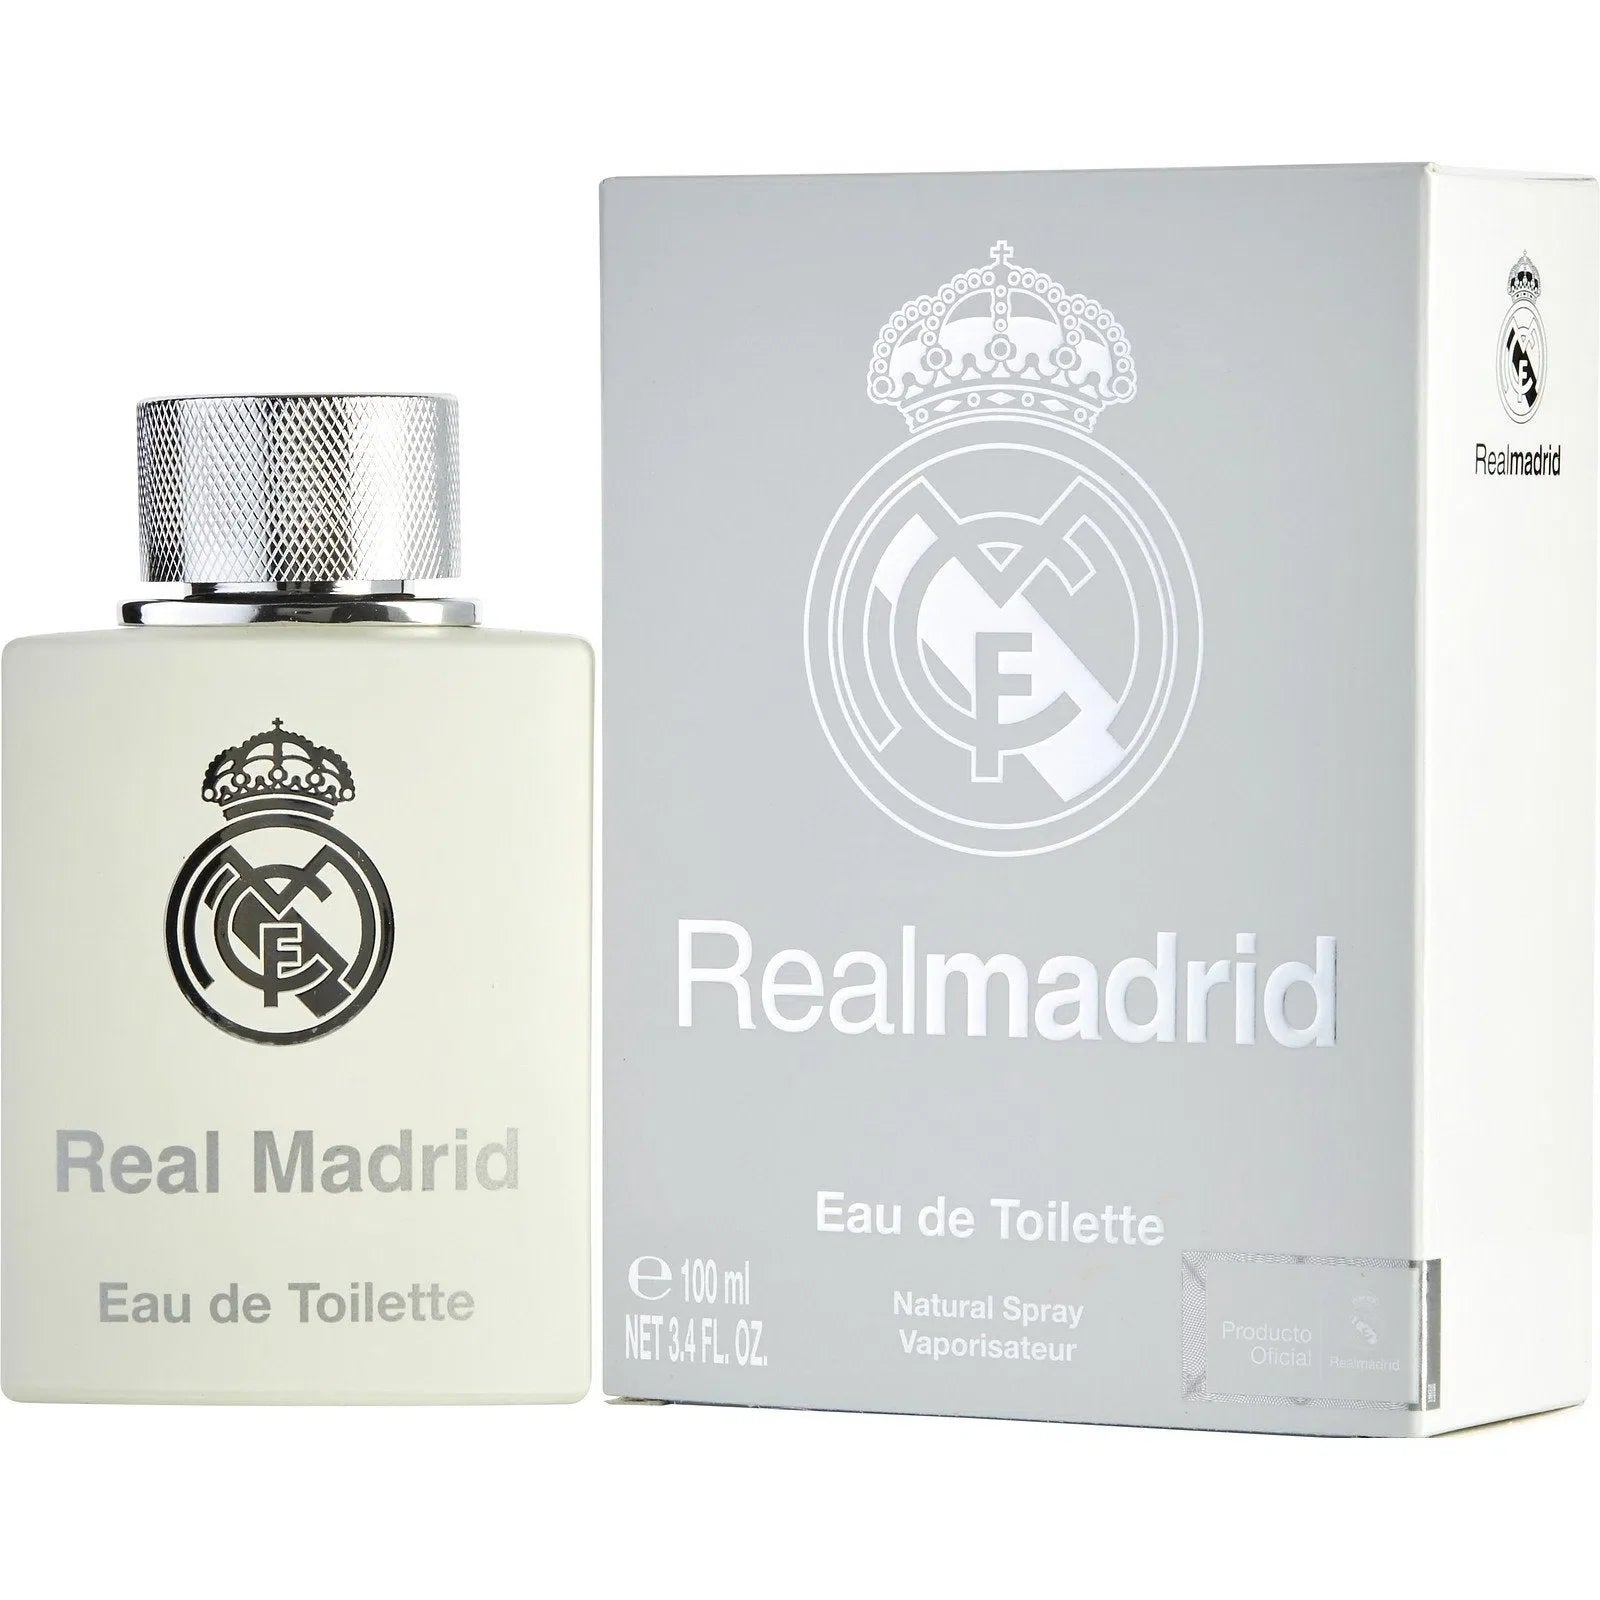 Perfume Football Club Real Madrid EDT (M) / 100 ml - 663350072297- 1 - Prive Perfumes Honduras